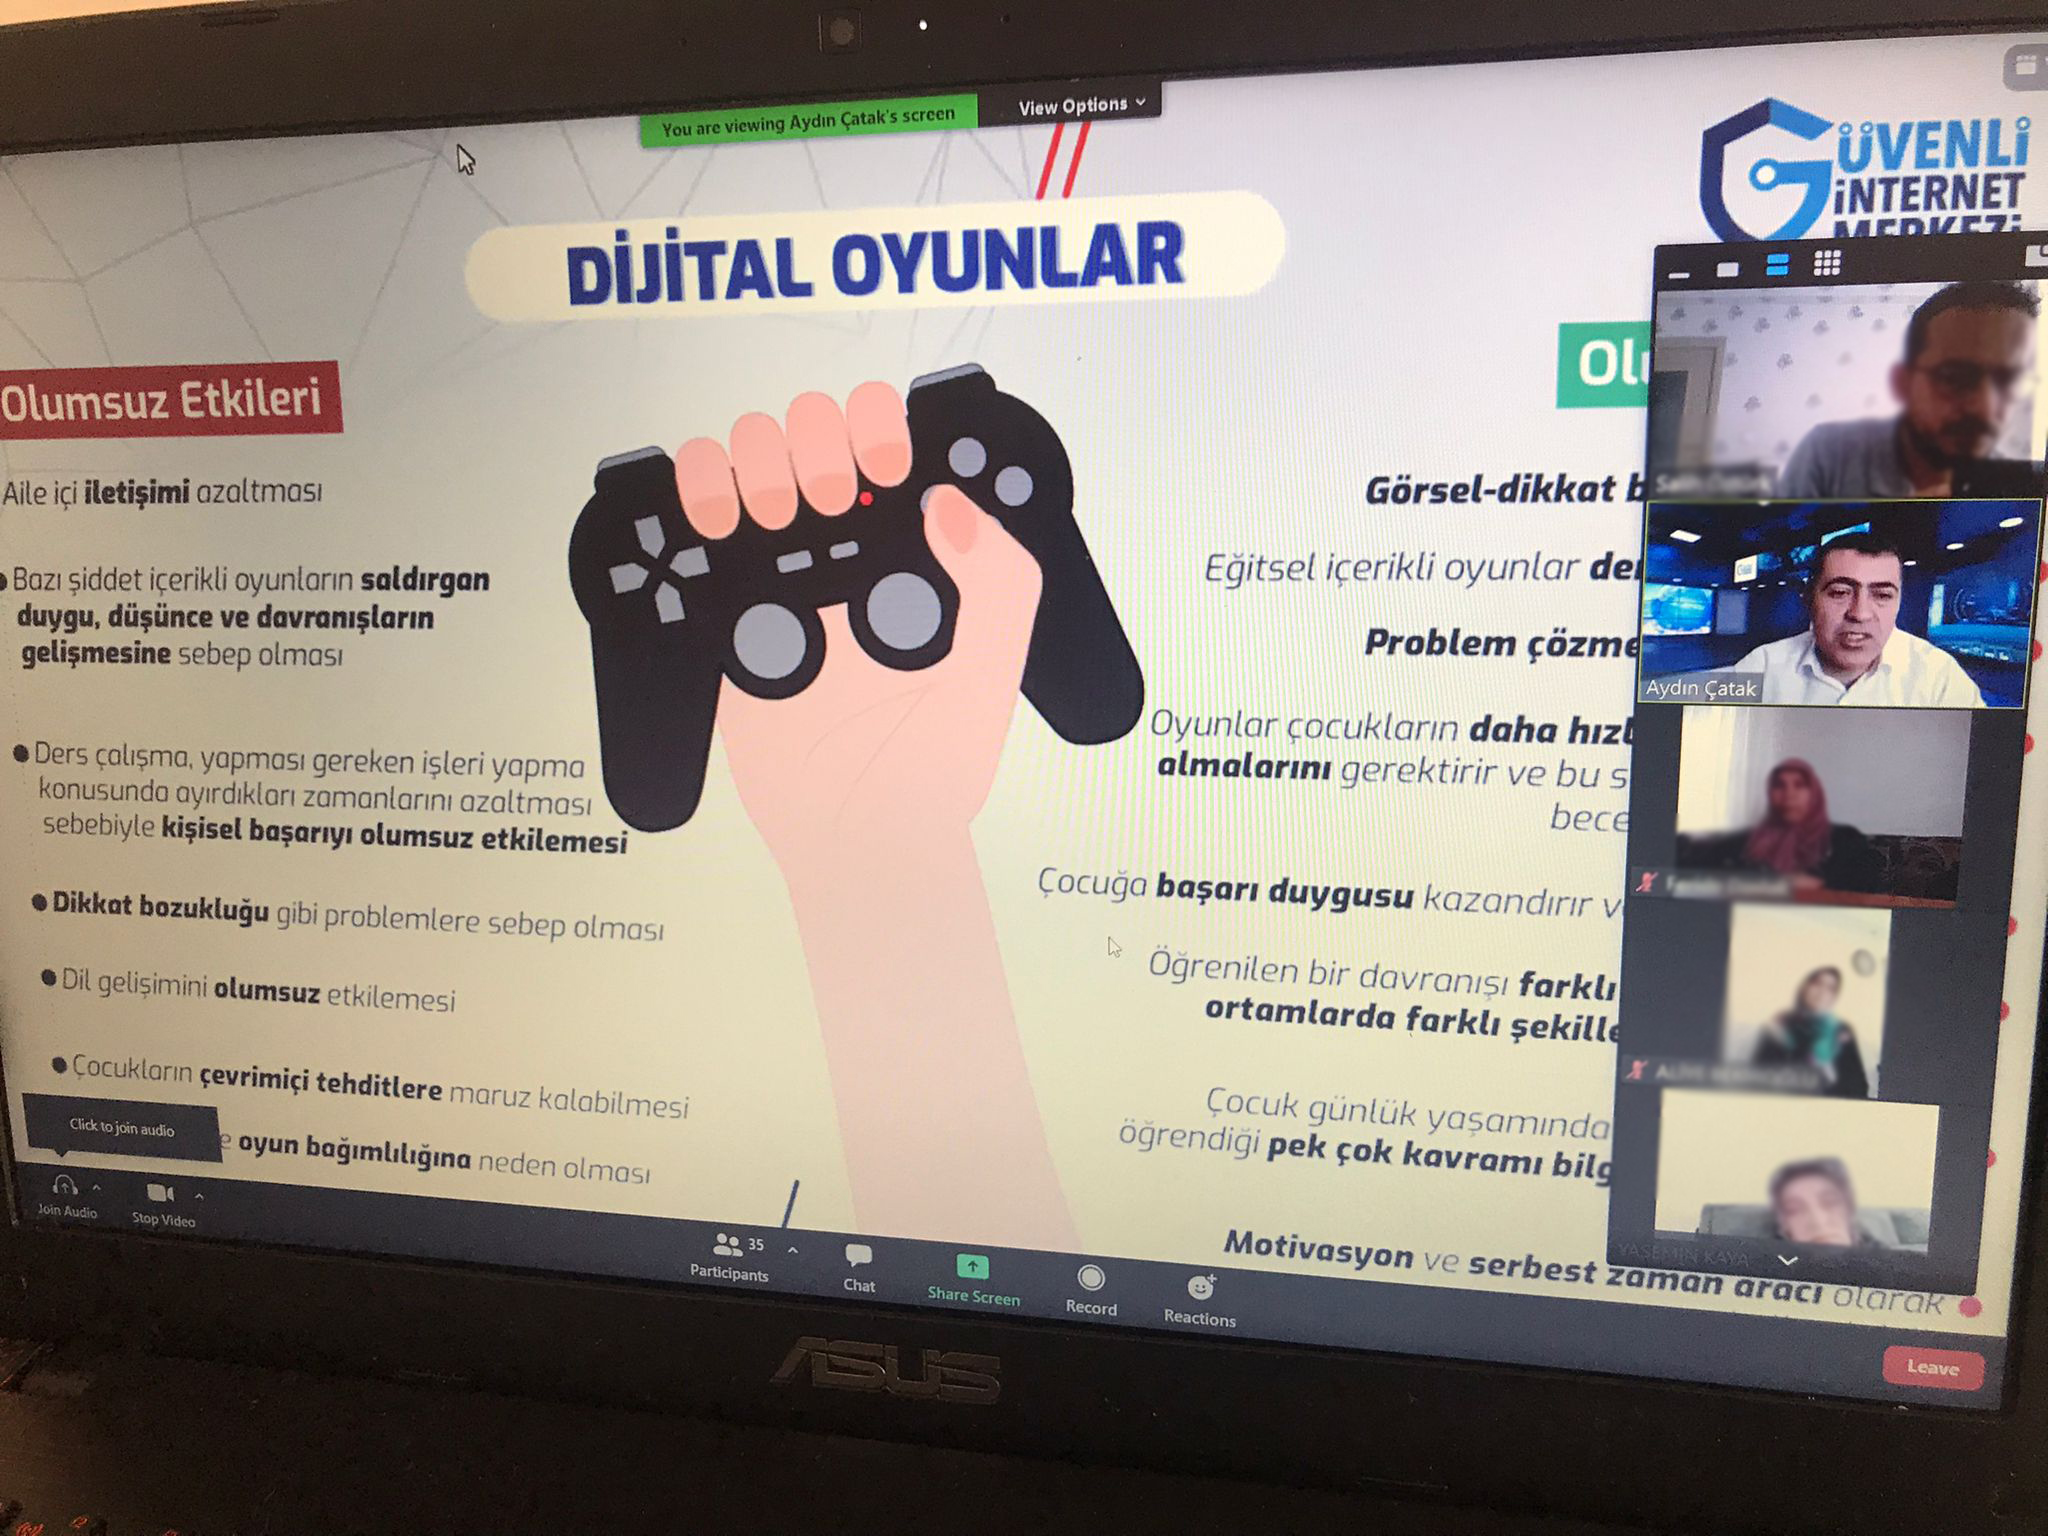 Kastamonu Anadolu İmamhatip Lisesi Velilerine Yönelik Online Eğitim